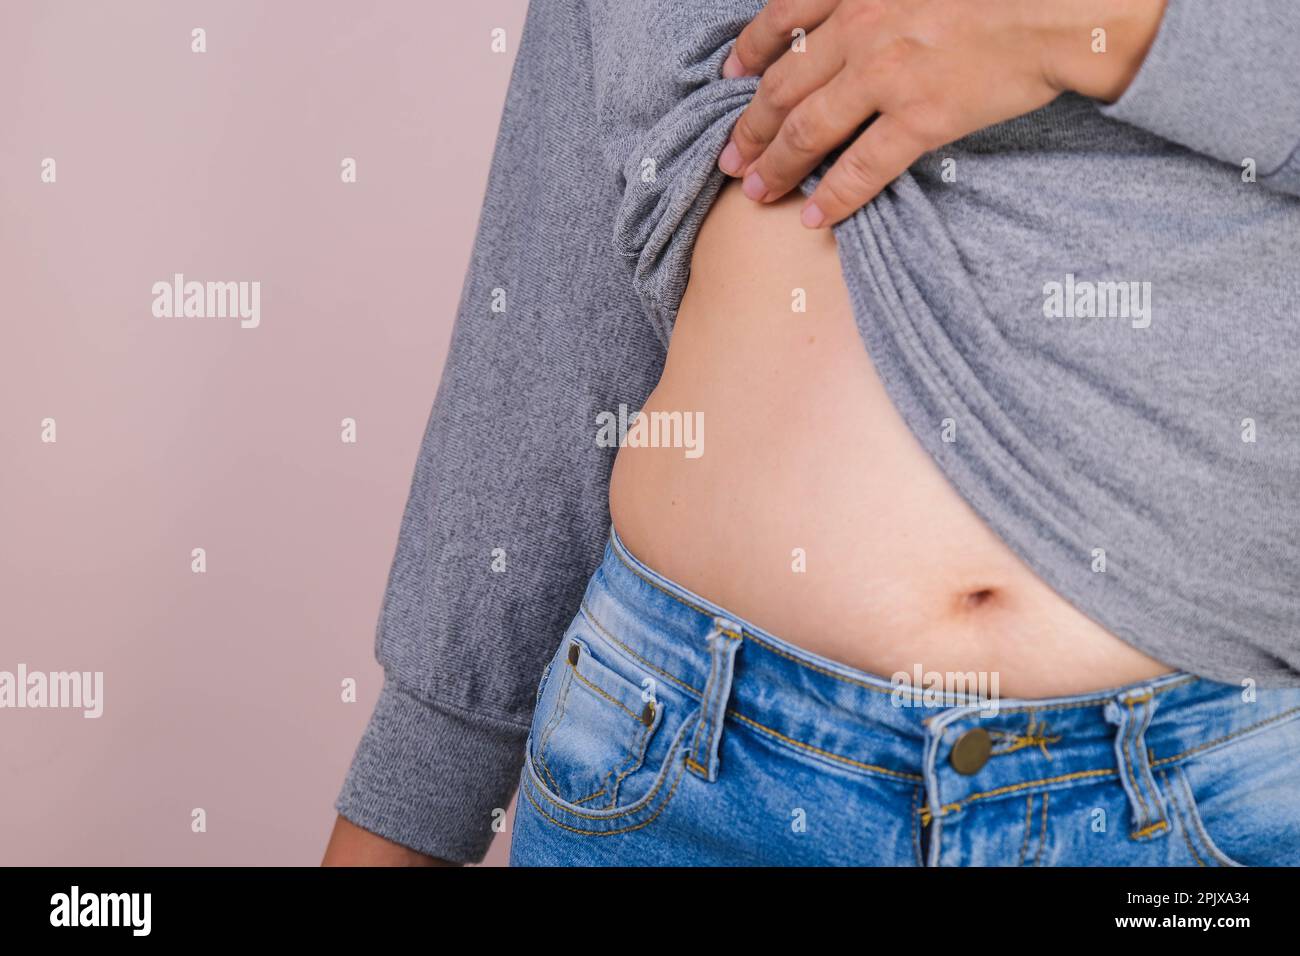 Mano gorda de la mujer que sostiene la grasa excesiva del vientre aislada sobre fondo rosado. Vientre graso con sobrepeso de la mujer. Dieta femenina y concepto de cuidado de la salud del cuerpo Foto de stock